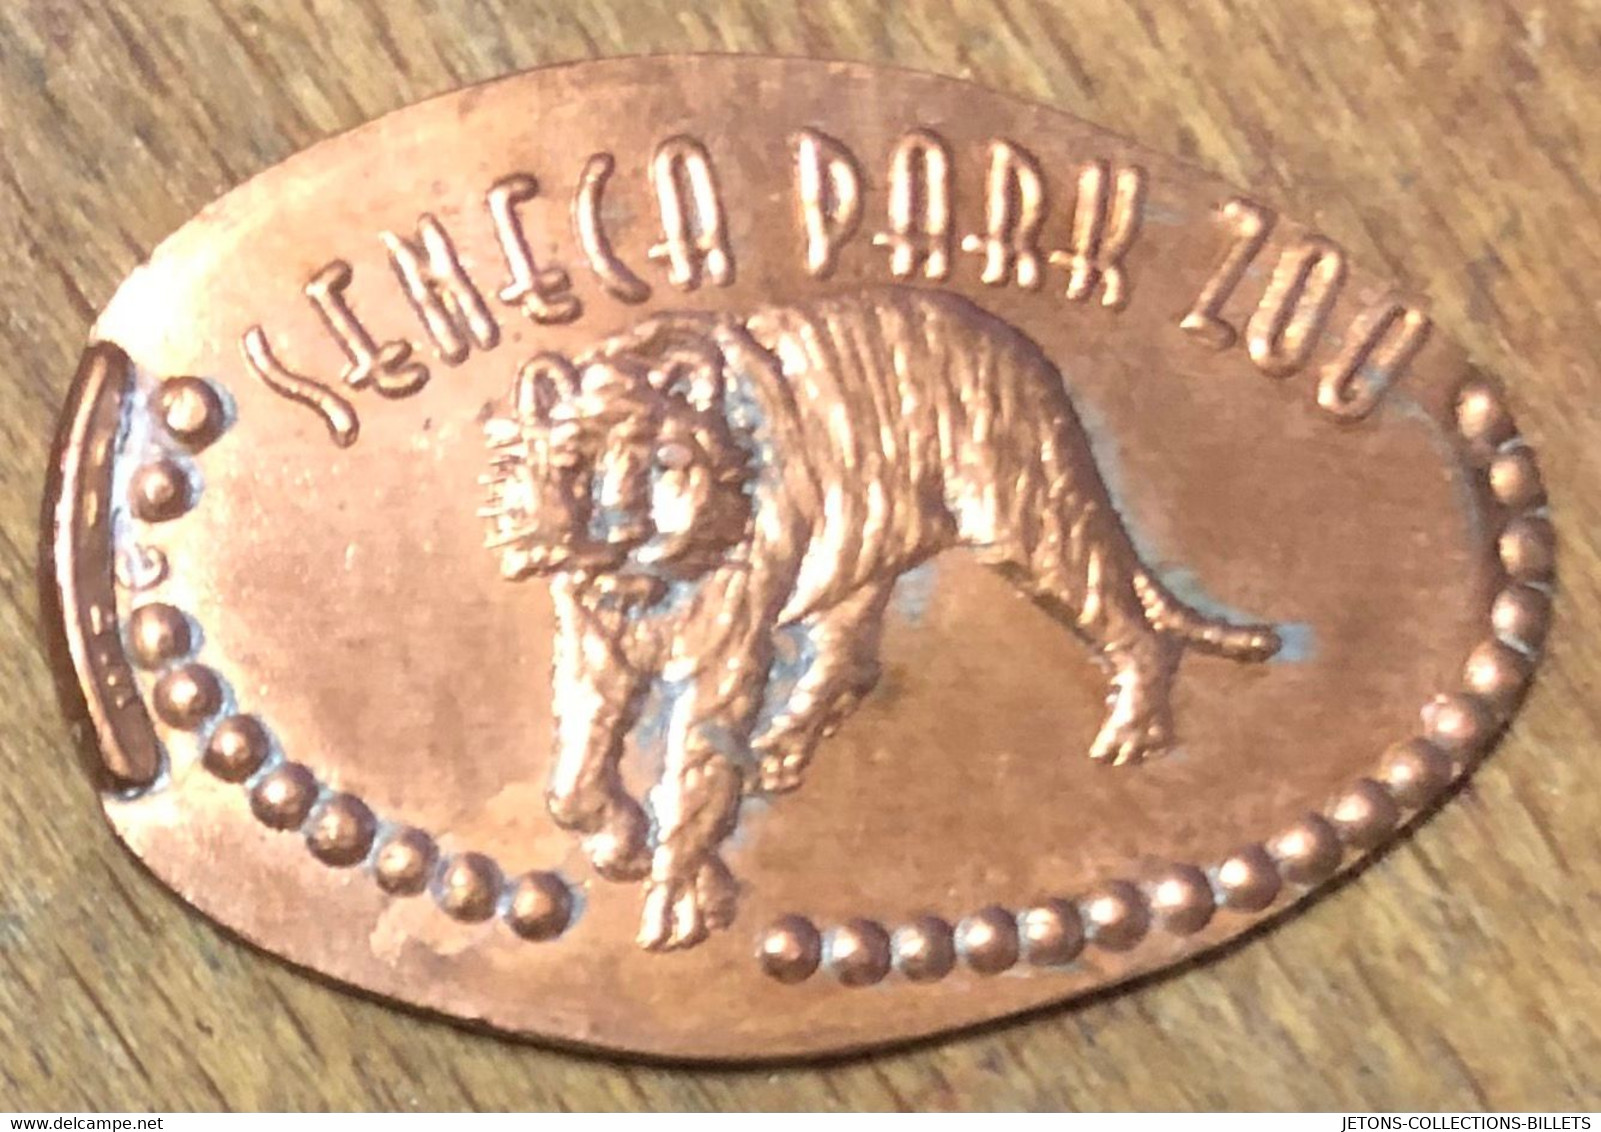 ÉTATS-UNIS USA SENECA PARK ZOO TIGRE PIÈCE ÉCRASÉE PENNY ELONGATED COIN MEDAILLE TOURISTIQUE MEDALS TOKENS - Souvenirmunten (elongated Coins)